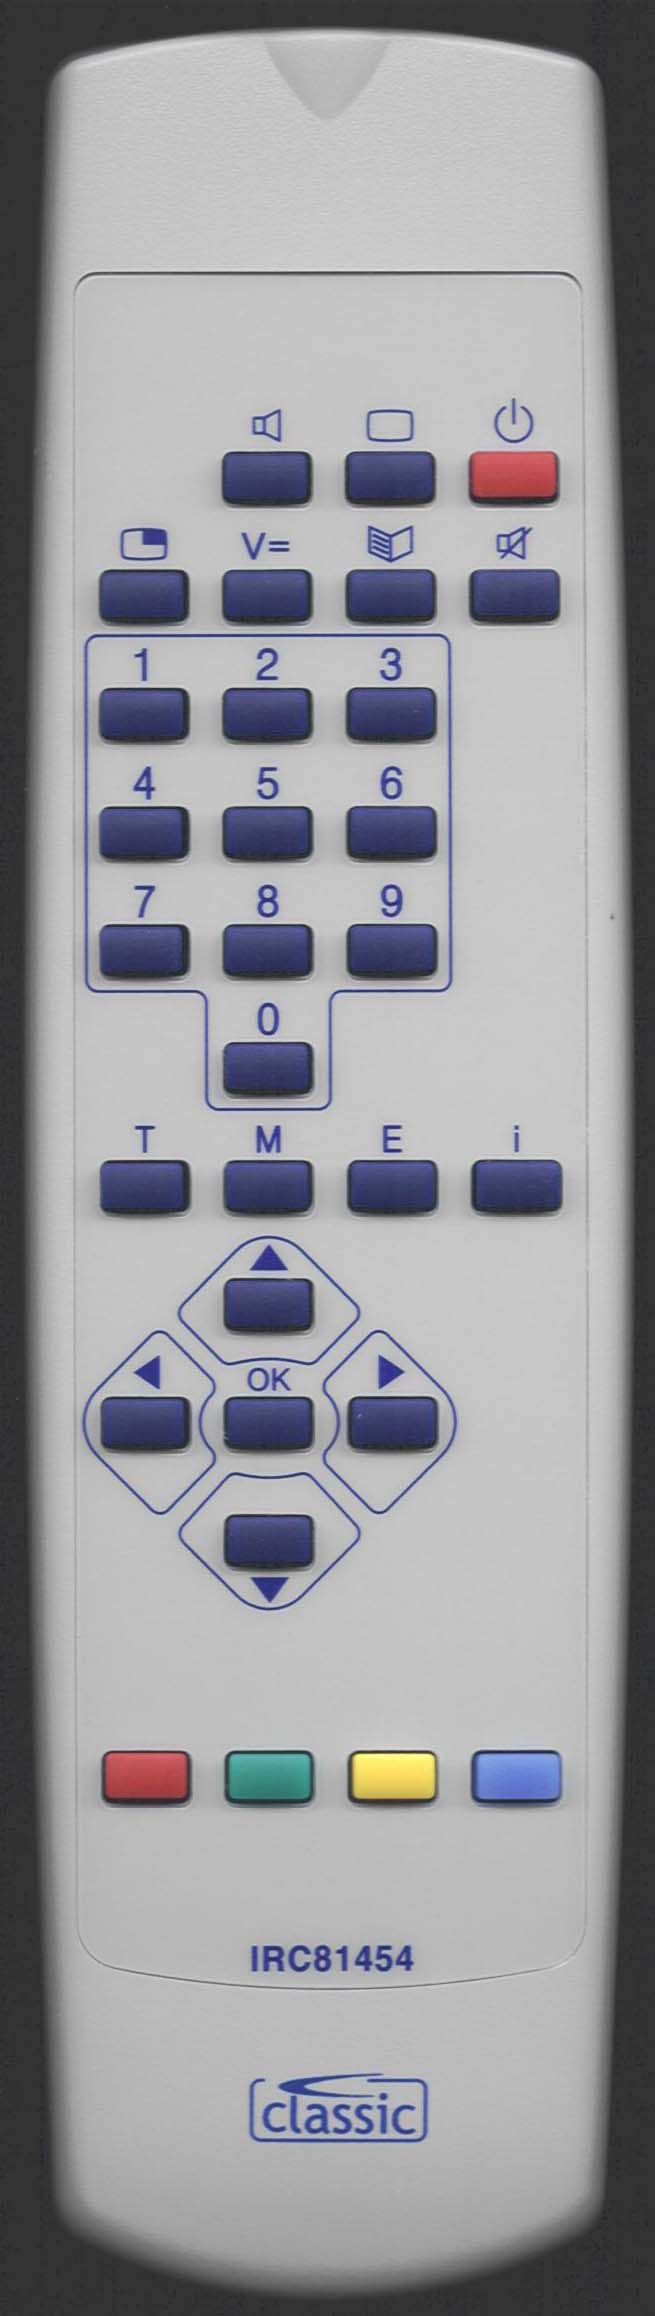 Loewe 87000 052 Remote Control